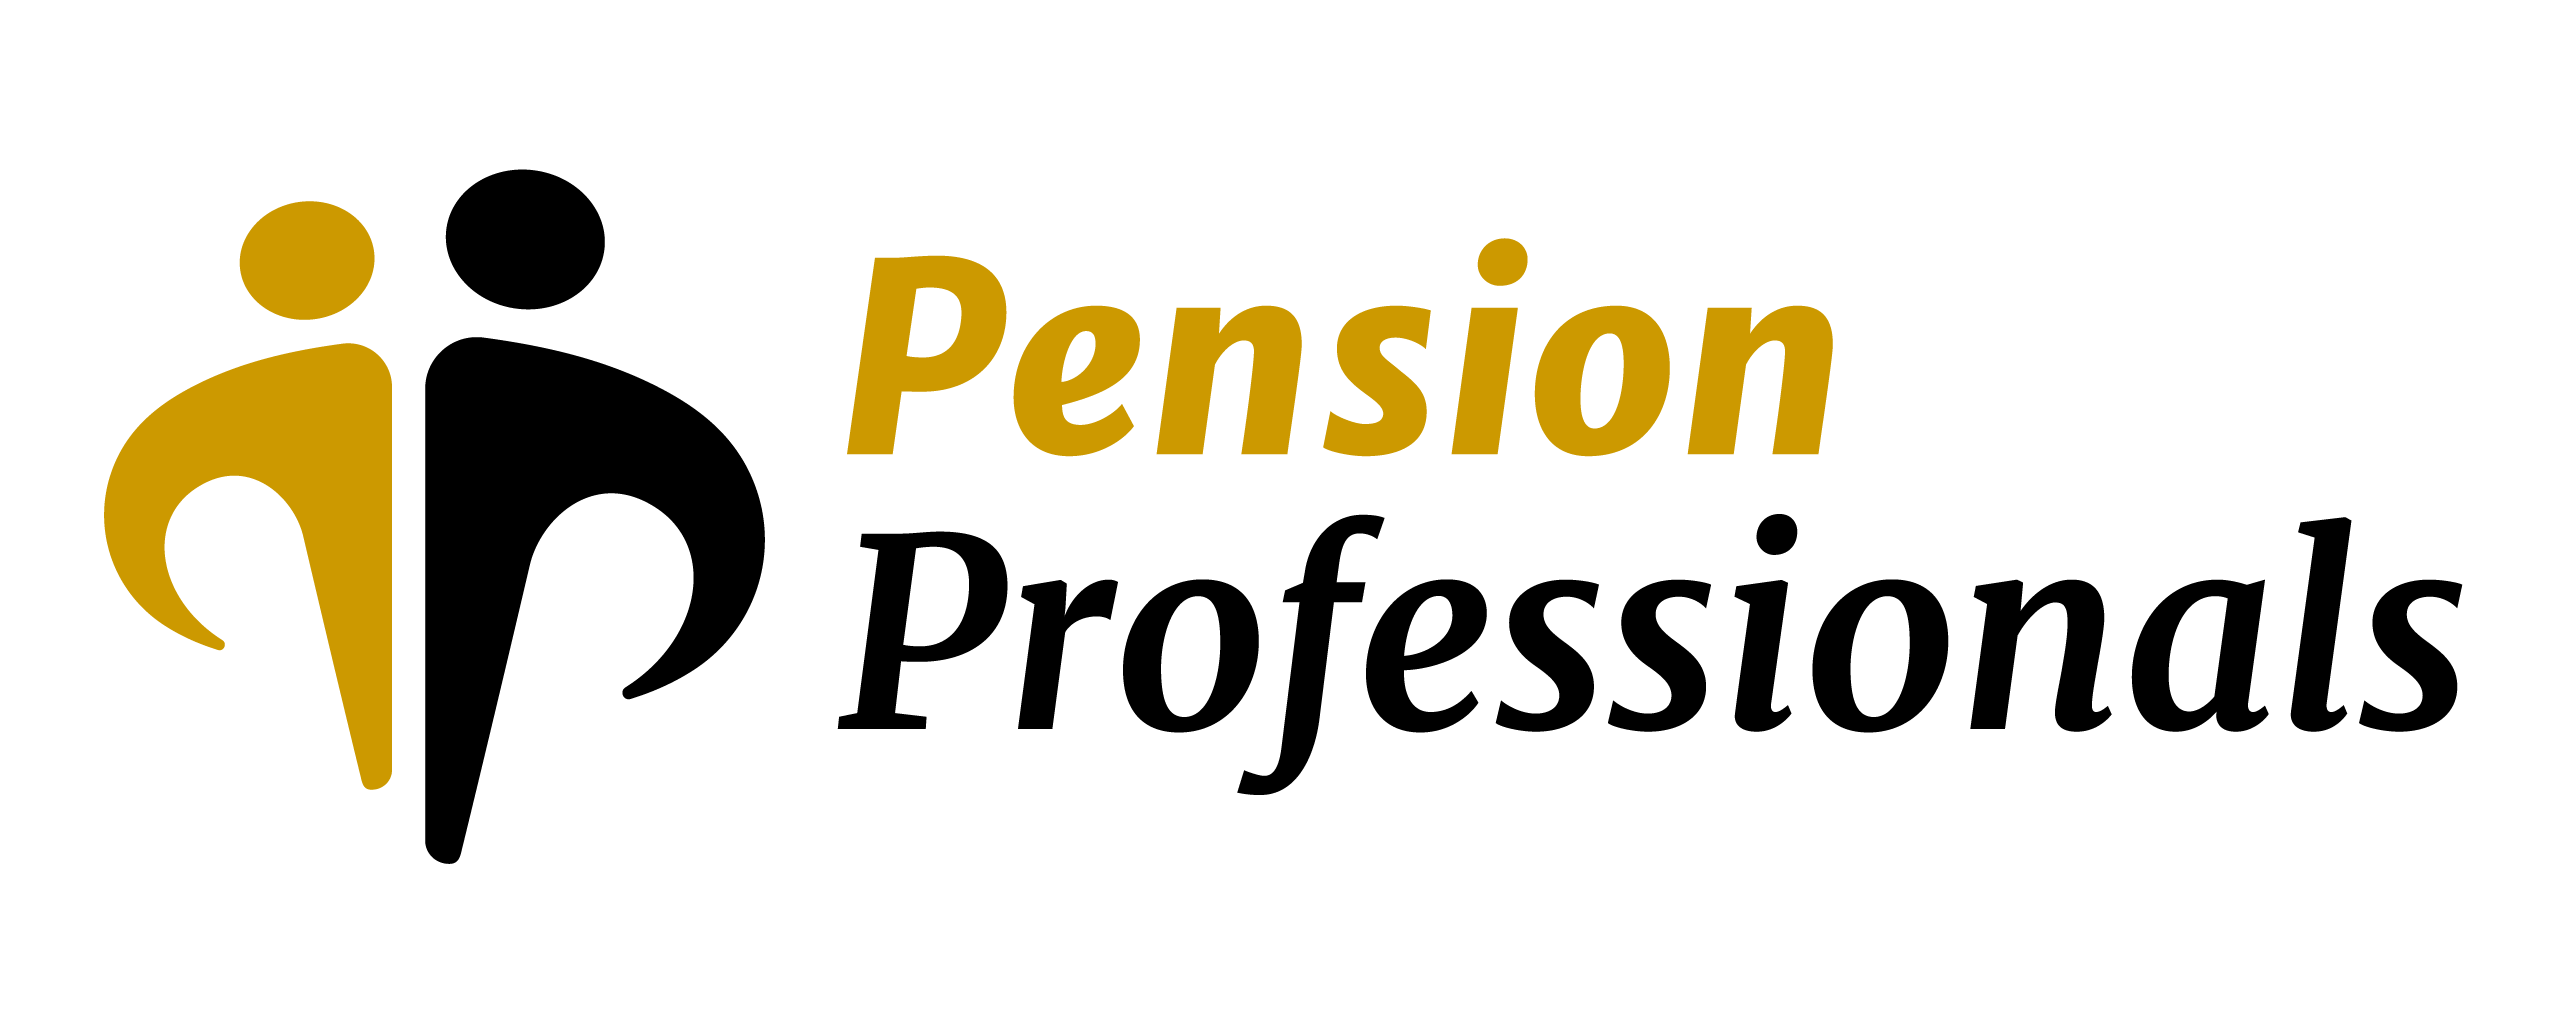 Pension Professionals